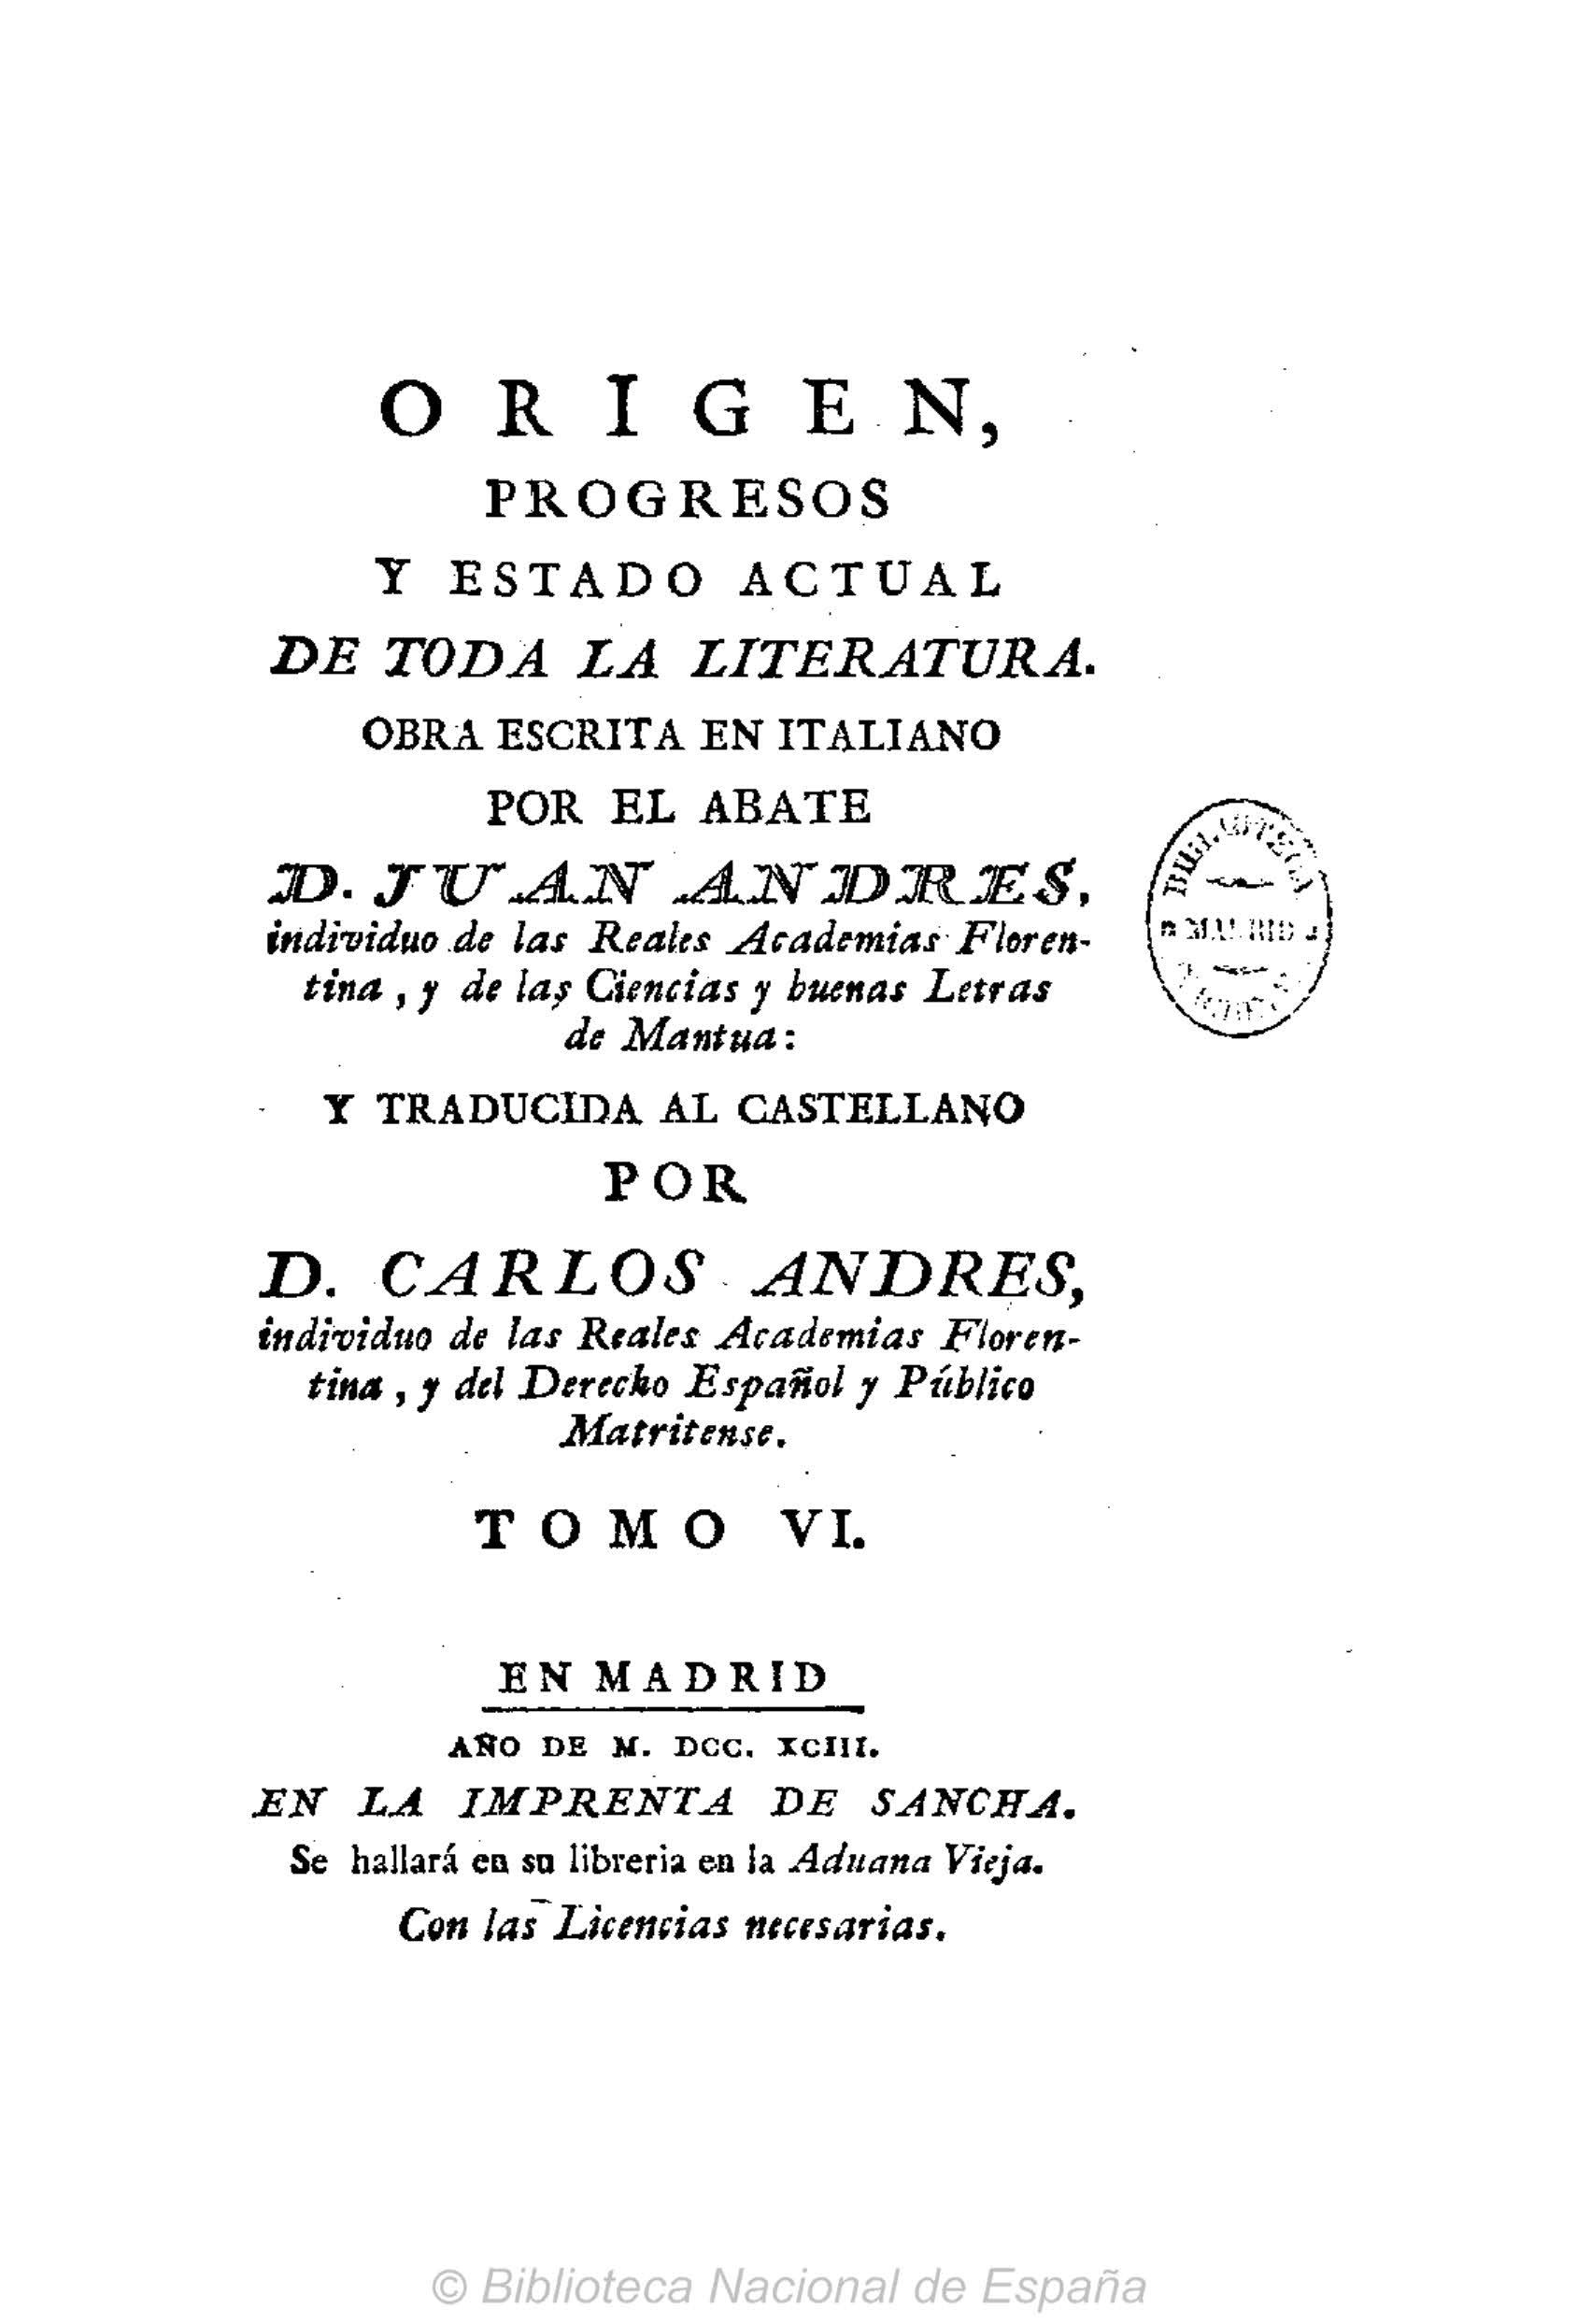 Origen, progresos y estado actual de toda la literatura, Tomo VI